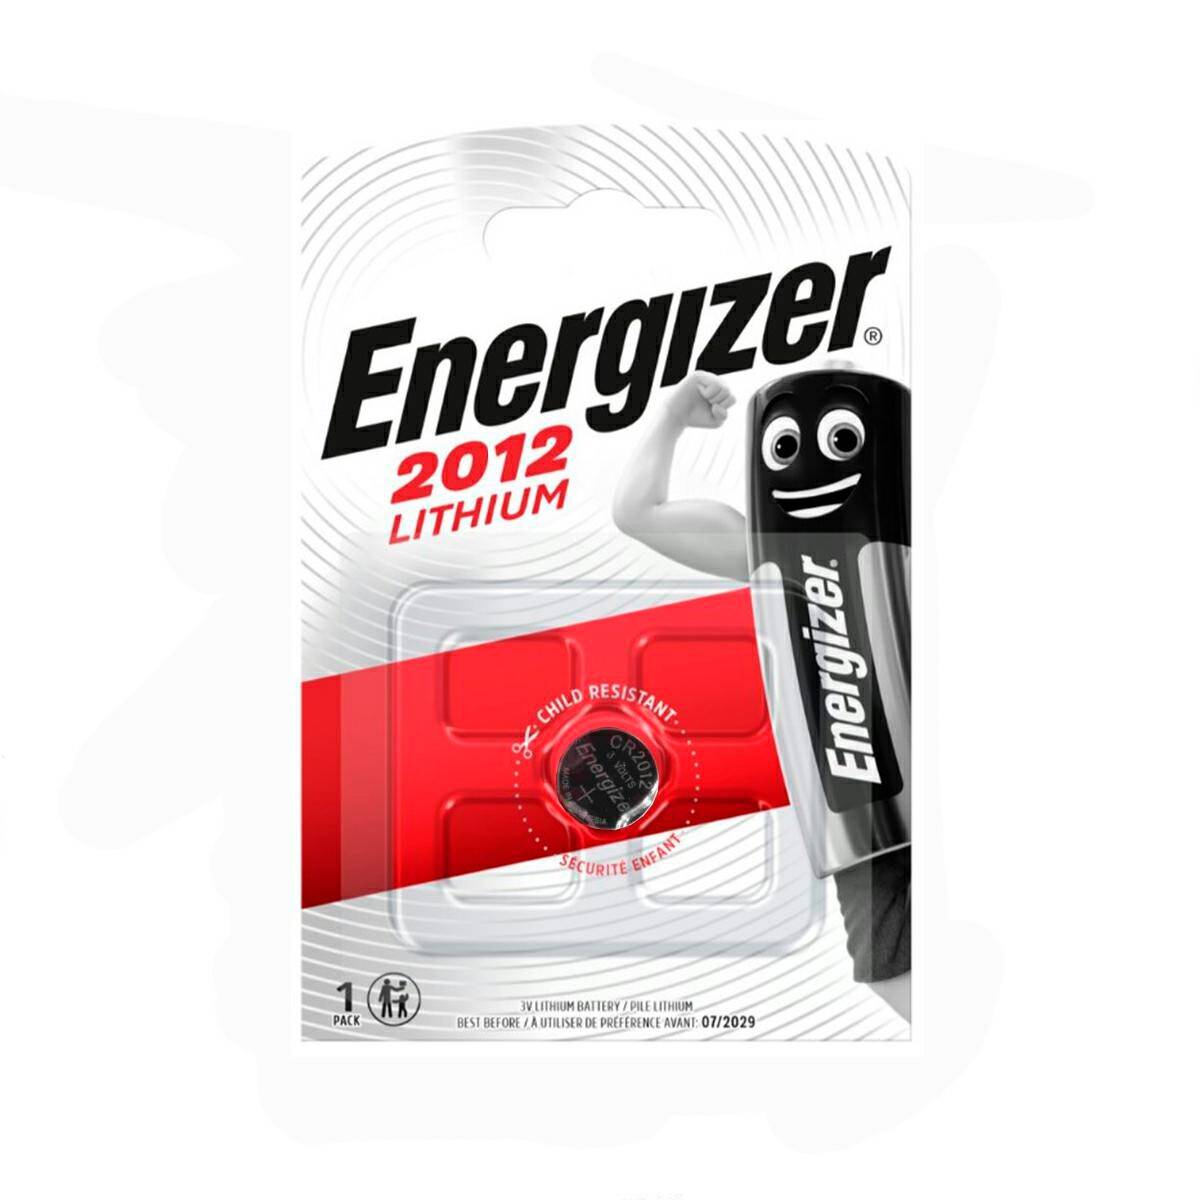 Batterie Energizer CR 2012 3V 1 stck